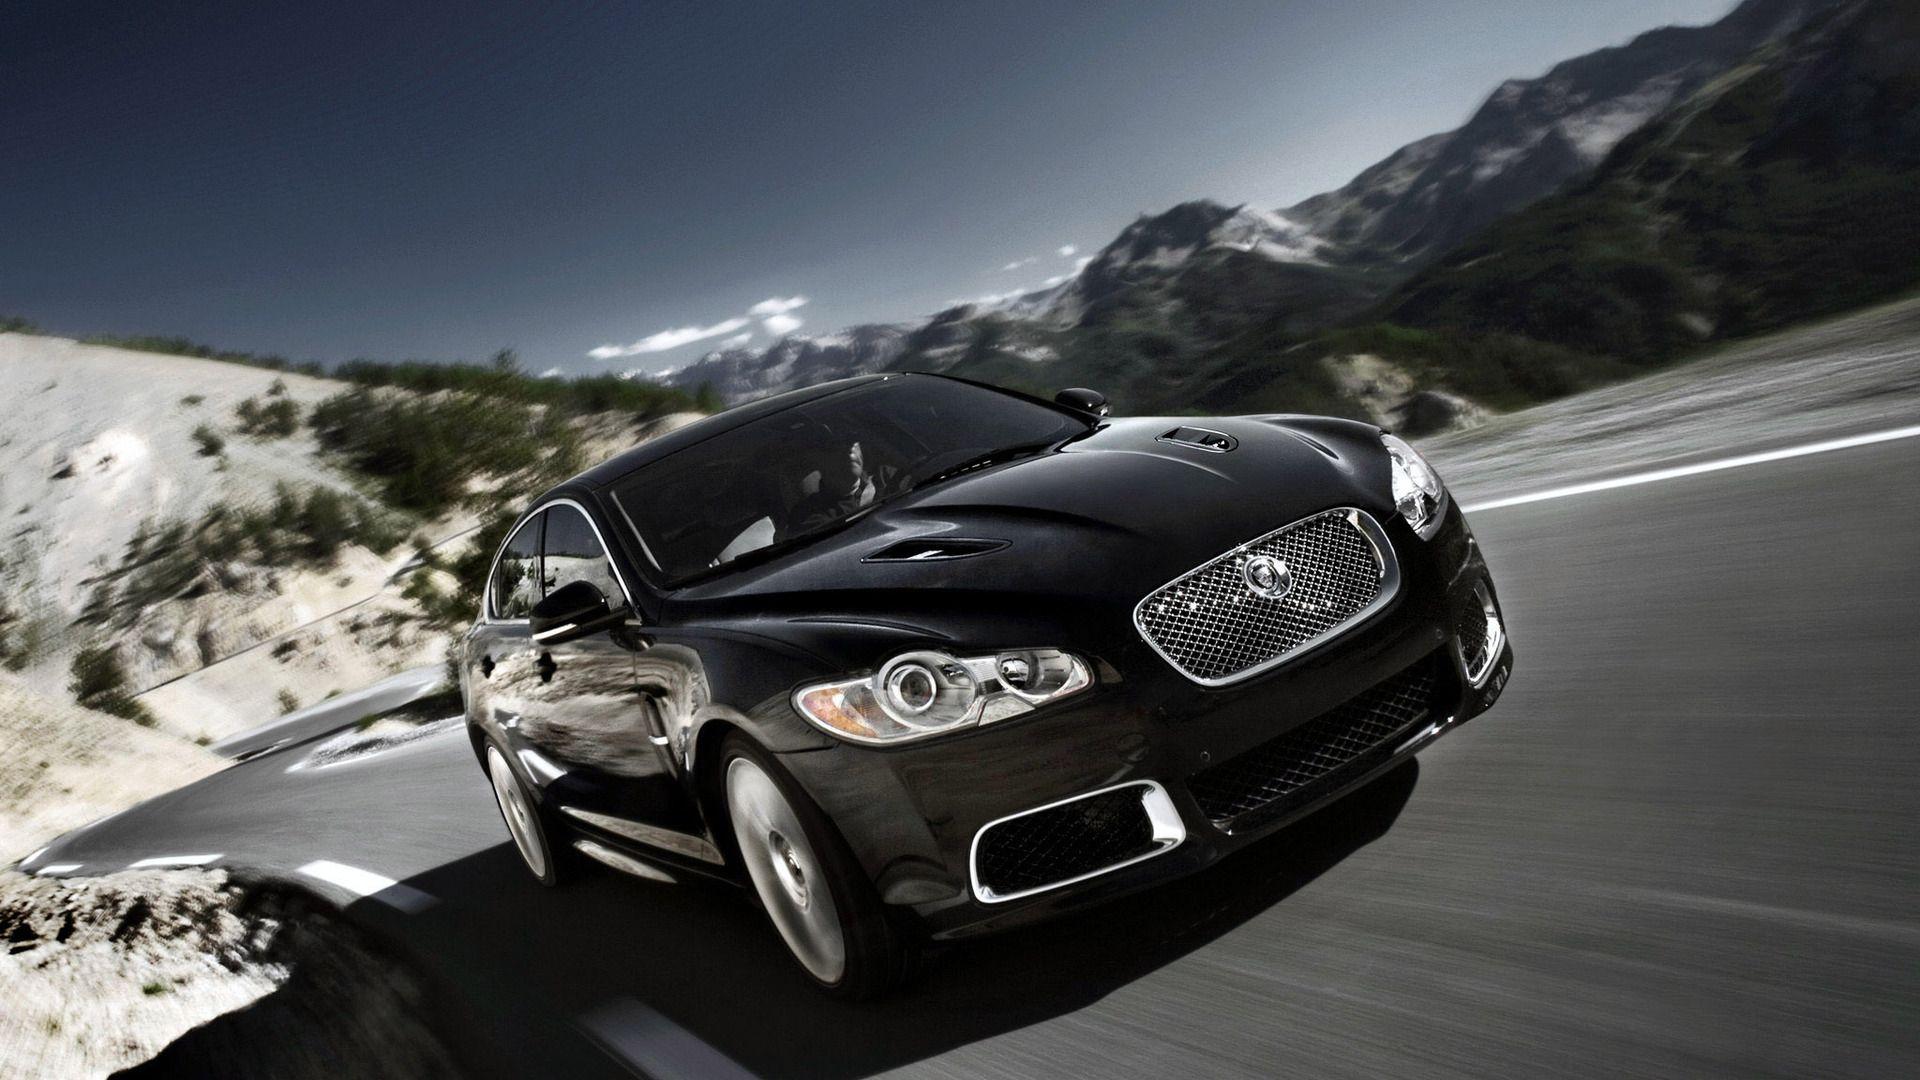 Black Jaguar Car HD Wallpaper 1080p Photo Widescreen High